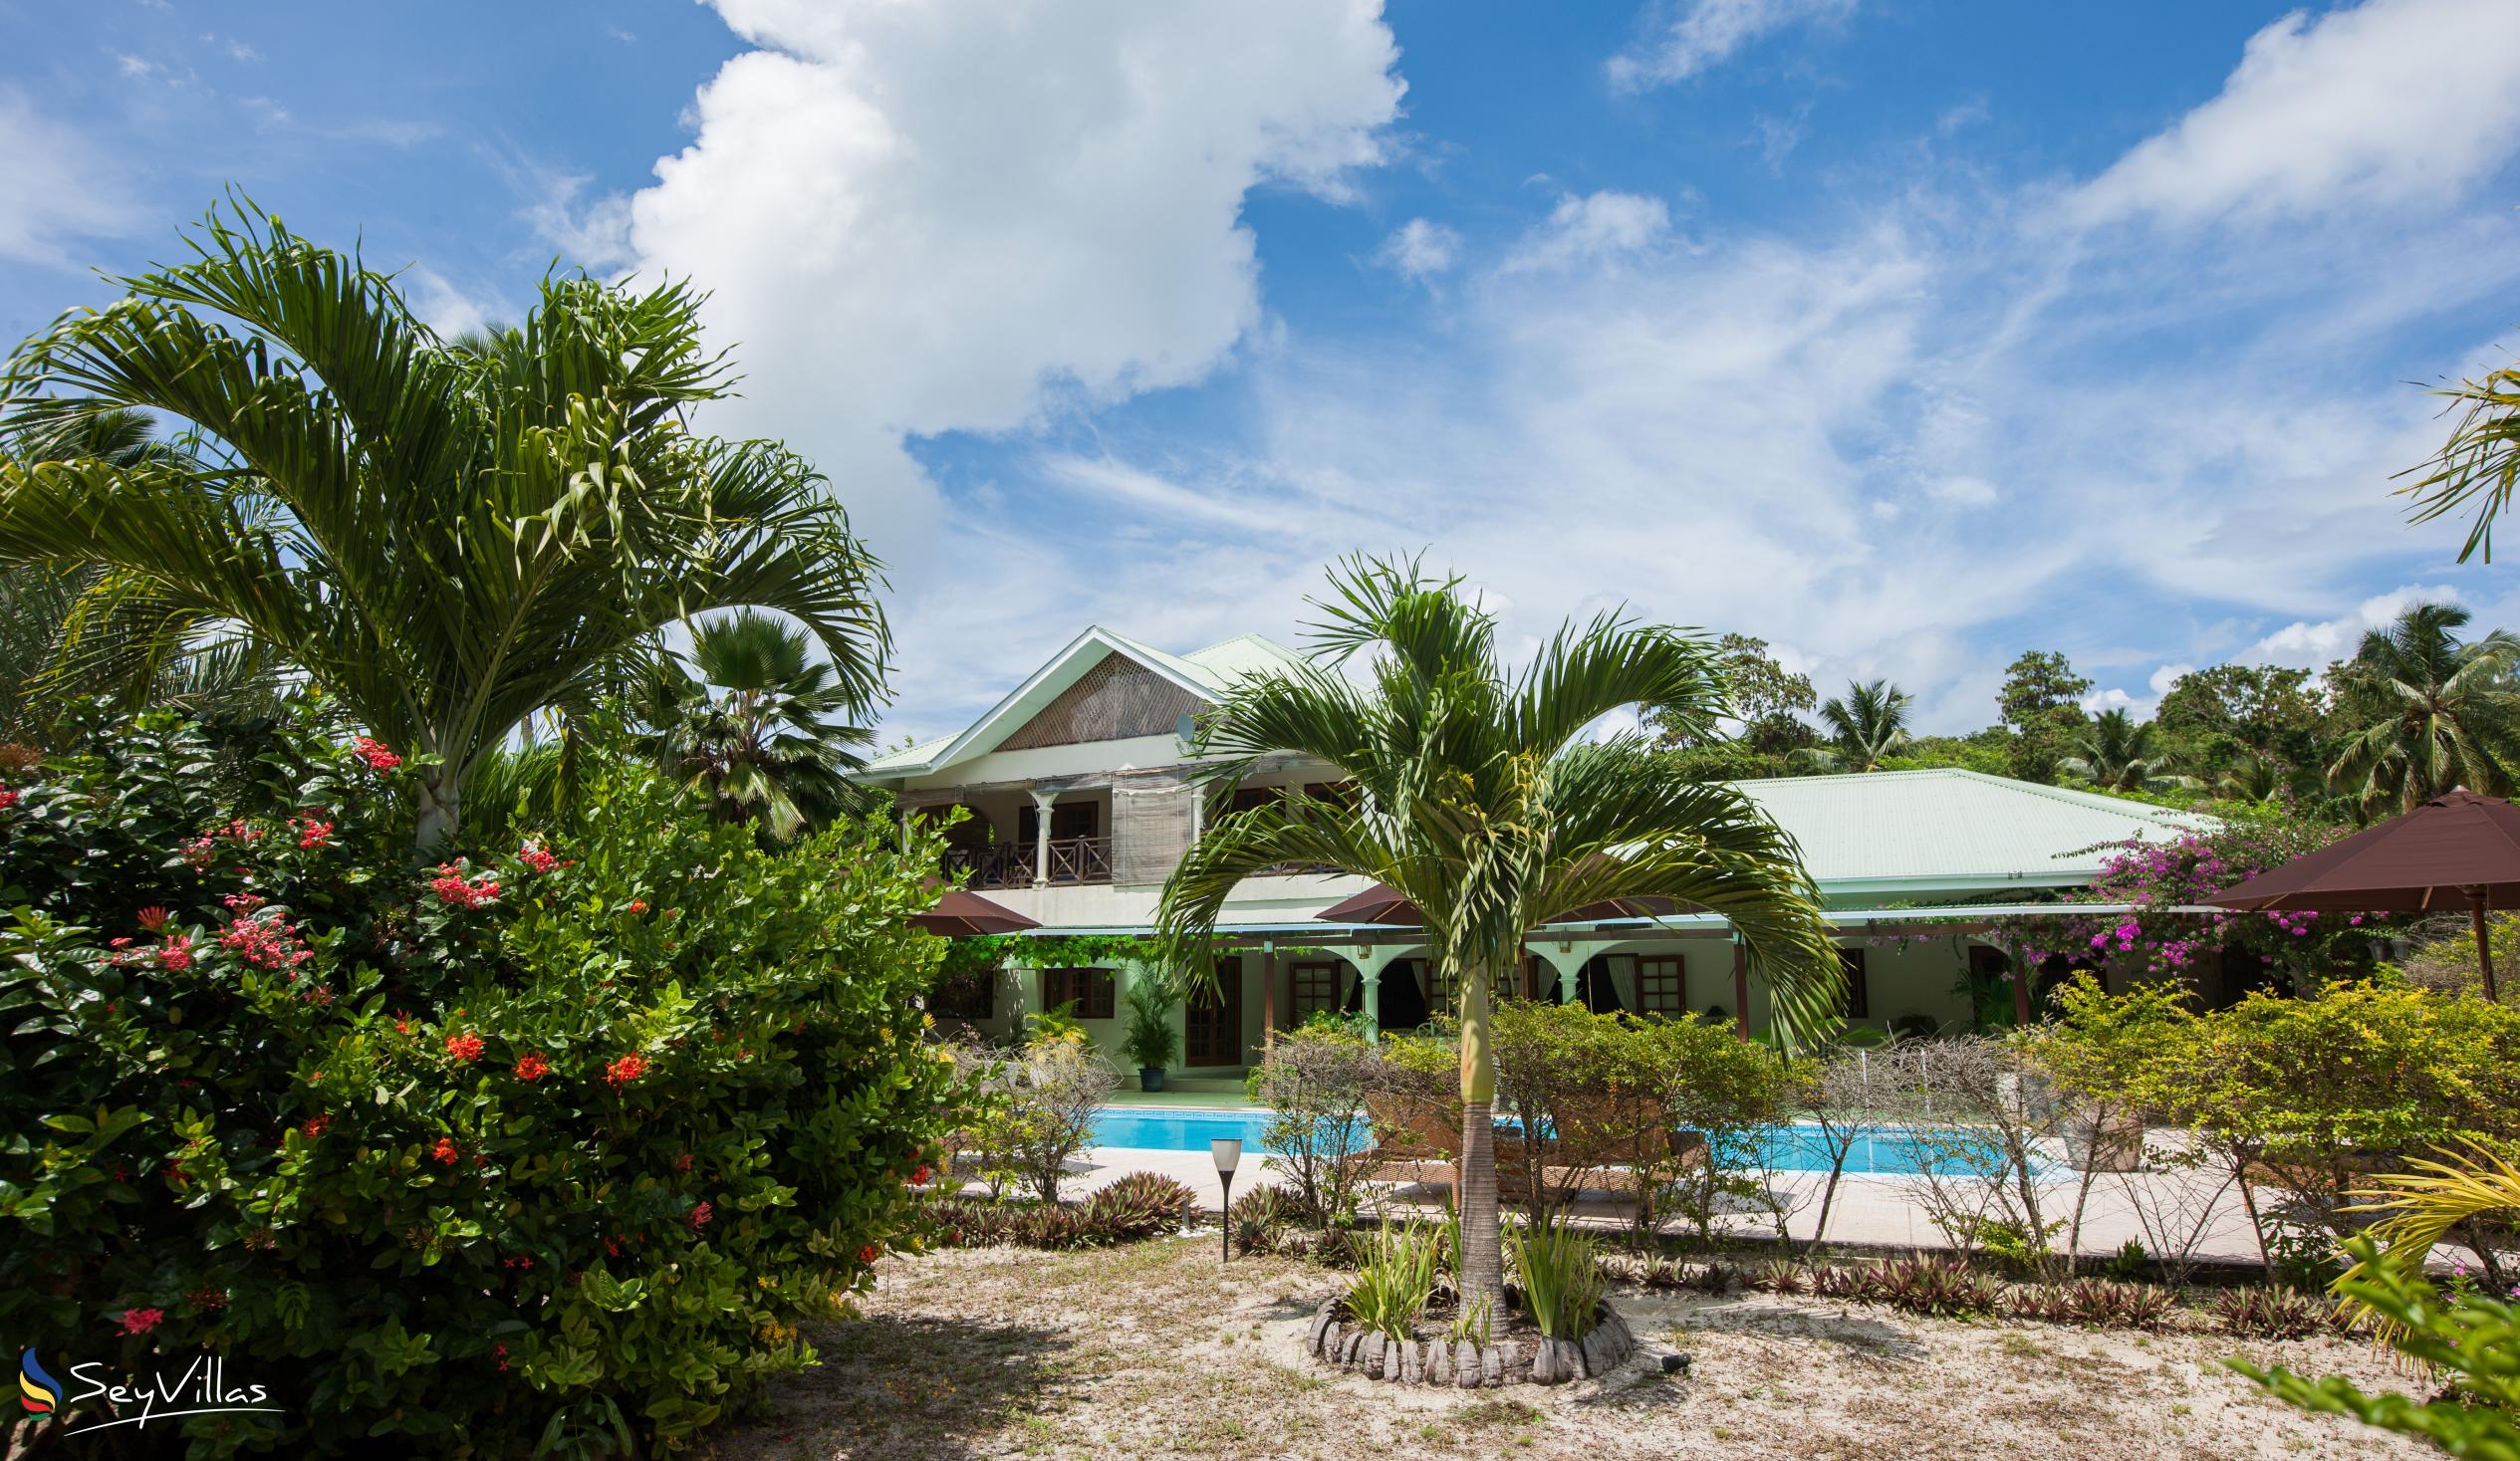 Foto 10: Villa de Cerf - Extérieur - Cerf Island (Seychelles)